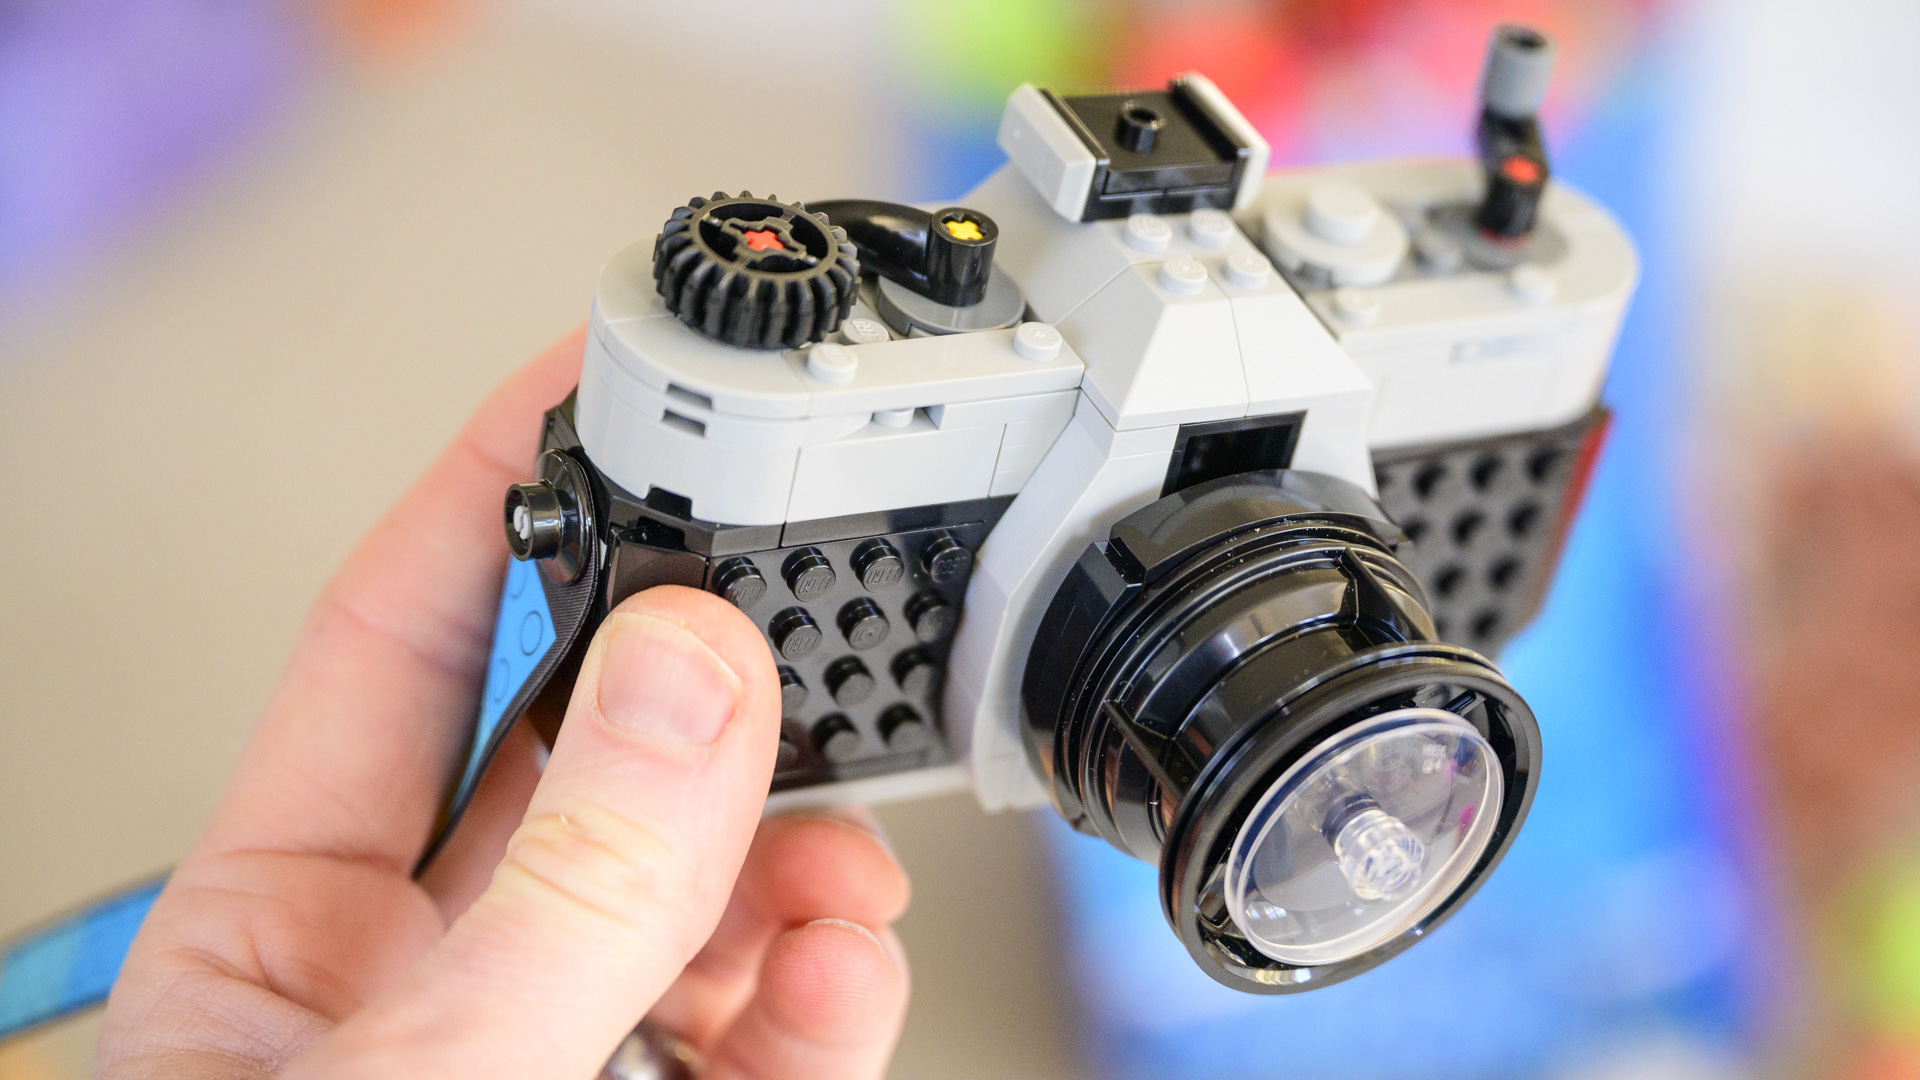 Lego Retro camera complete build in the hand